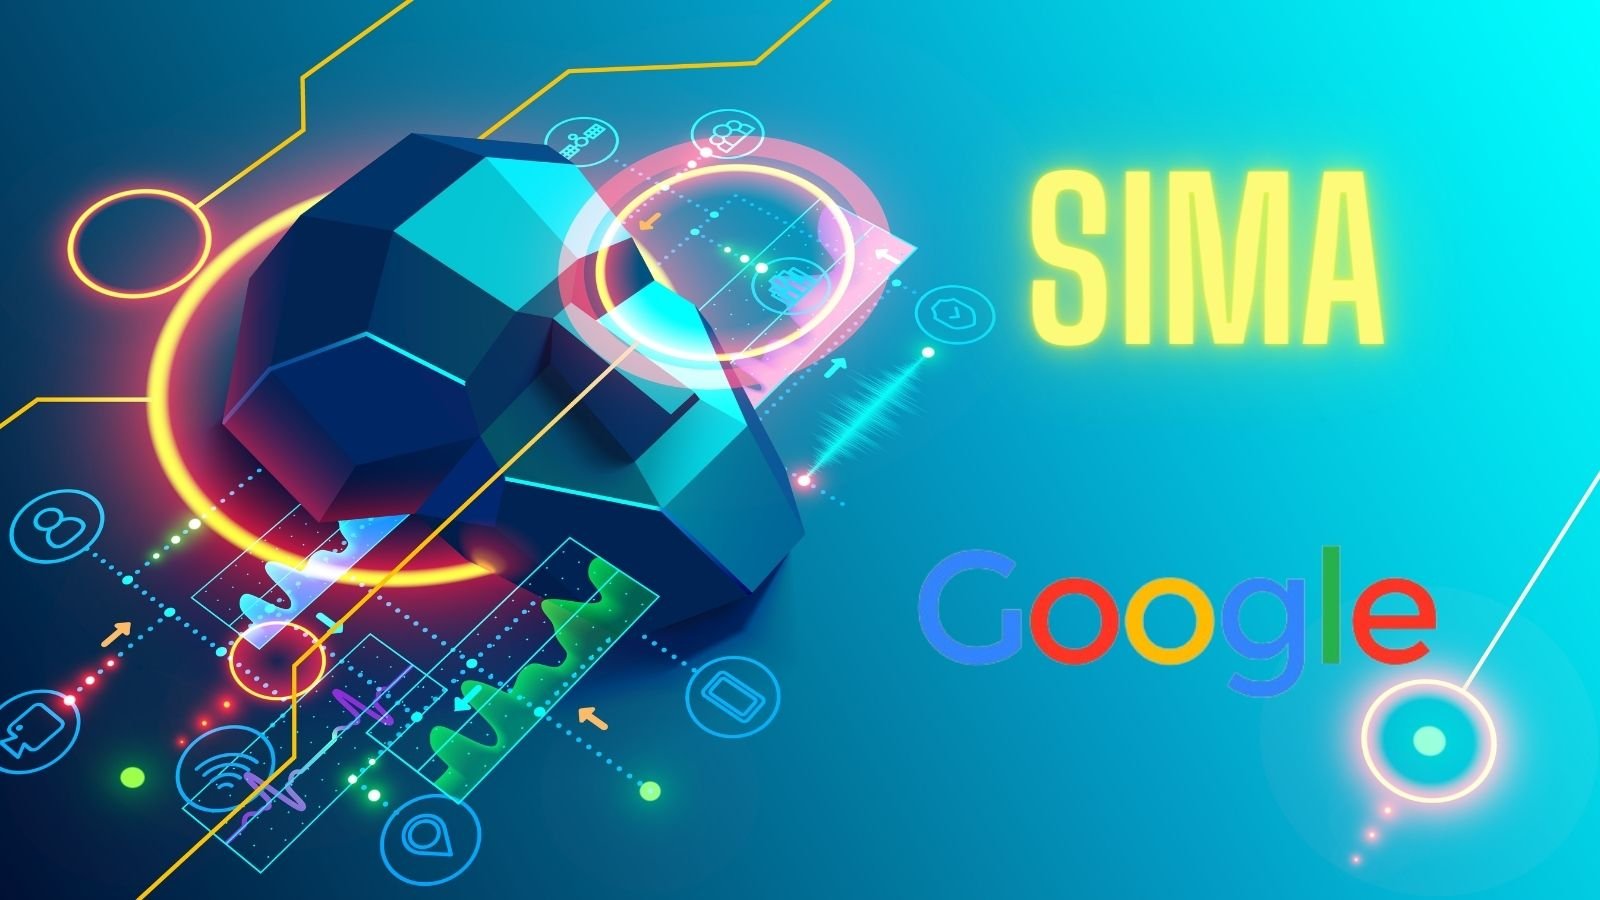 Google DeepMind markası, SIMA adını koyduğu bir yeni yapay zeka üzerinde çalışıldığı aktarıldı. SIMA'nın görevi insanlara iyi bir video oyun...